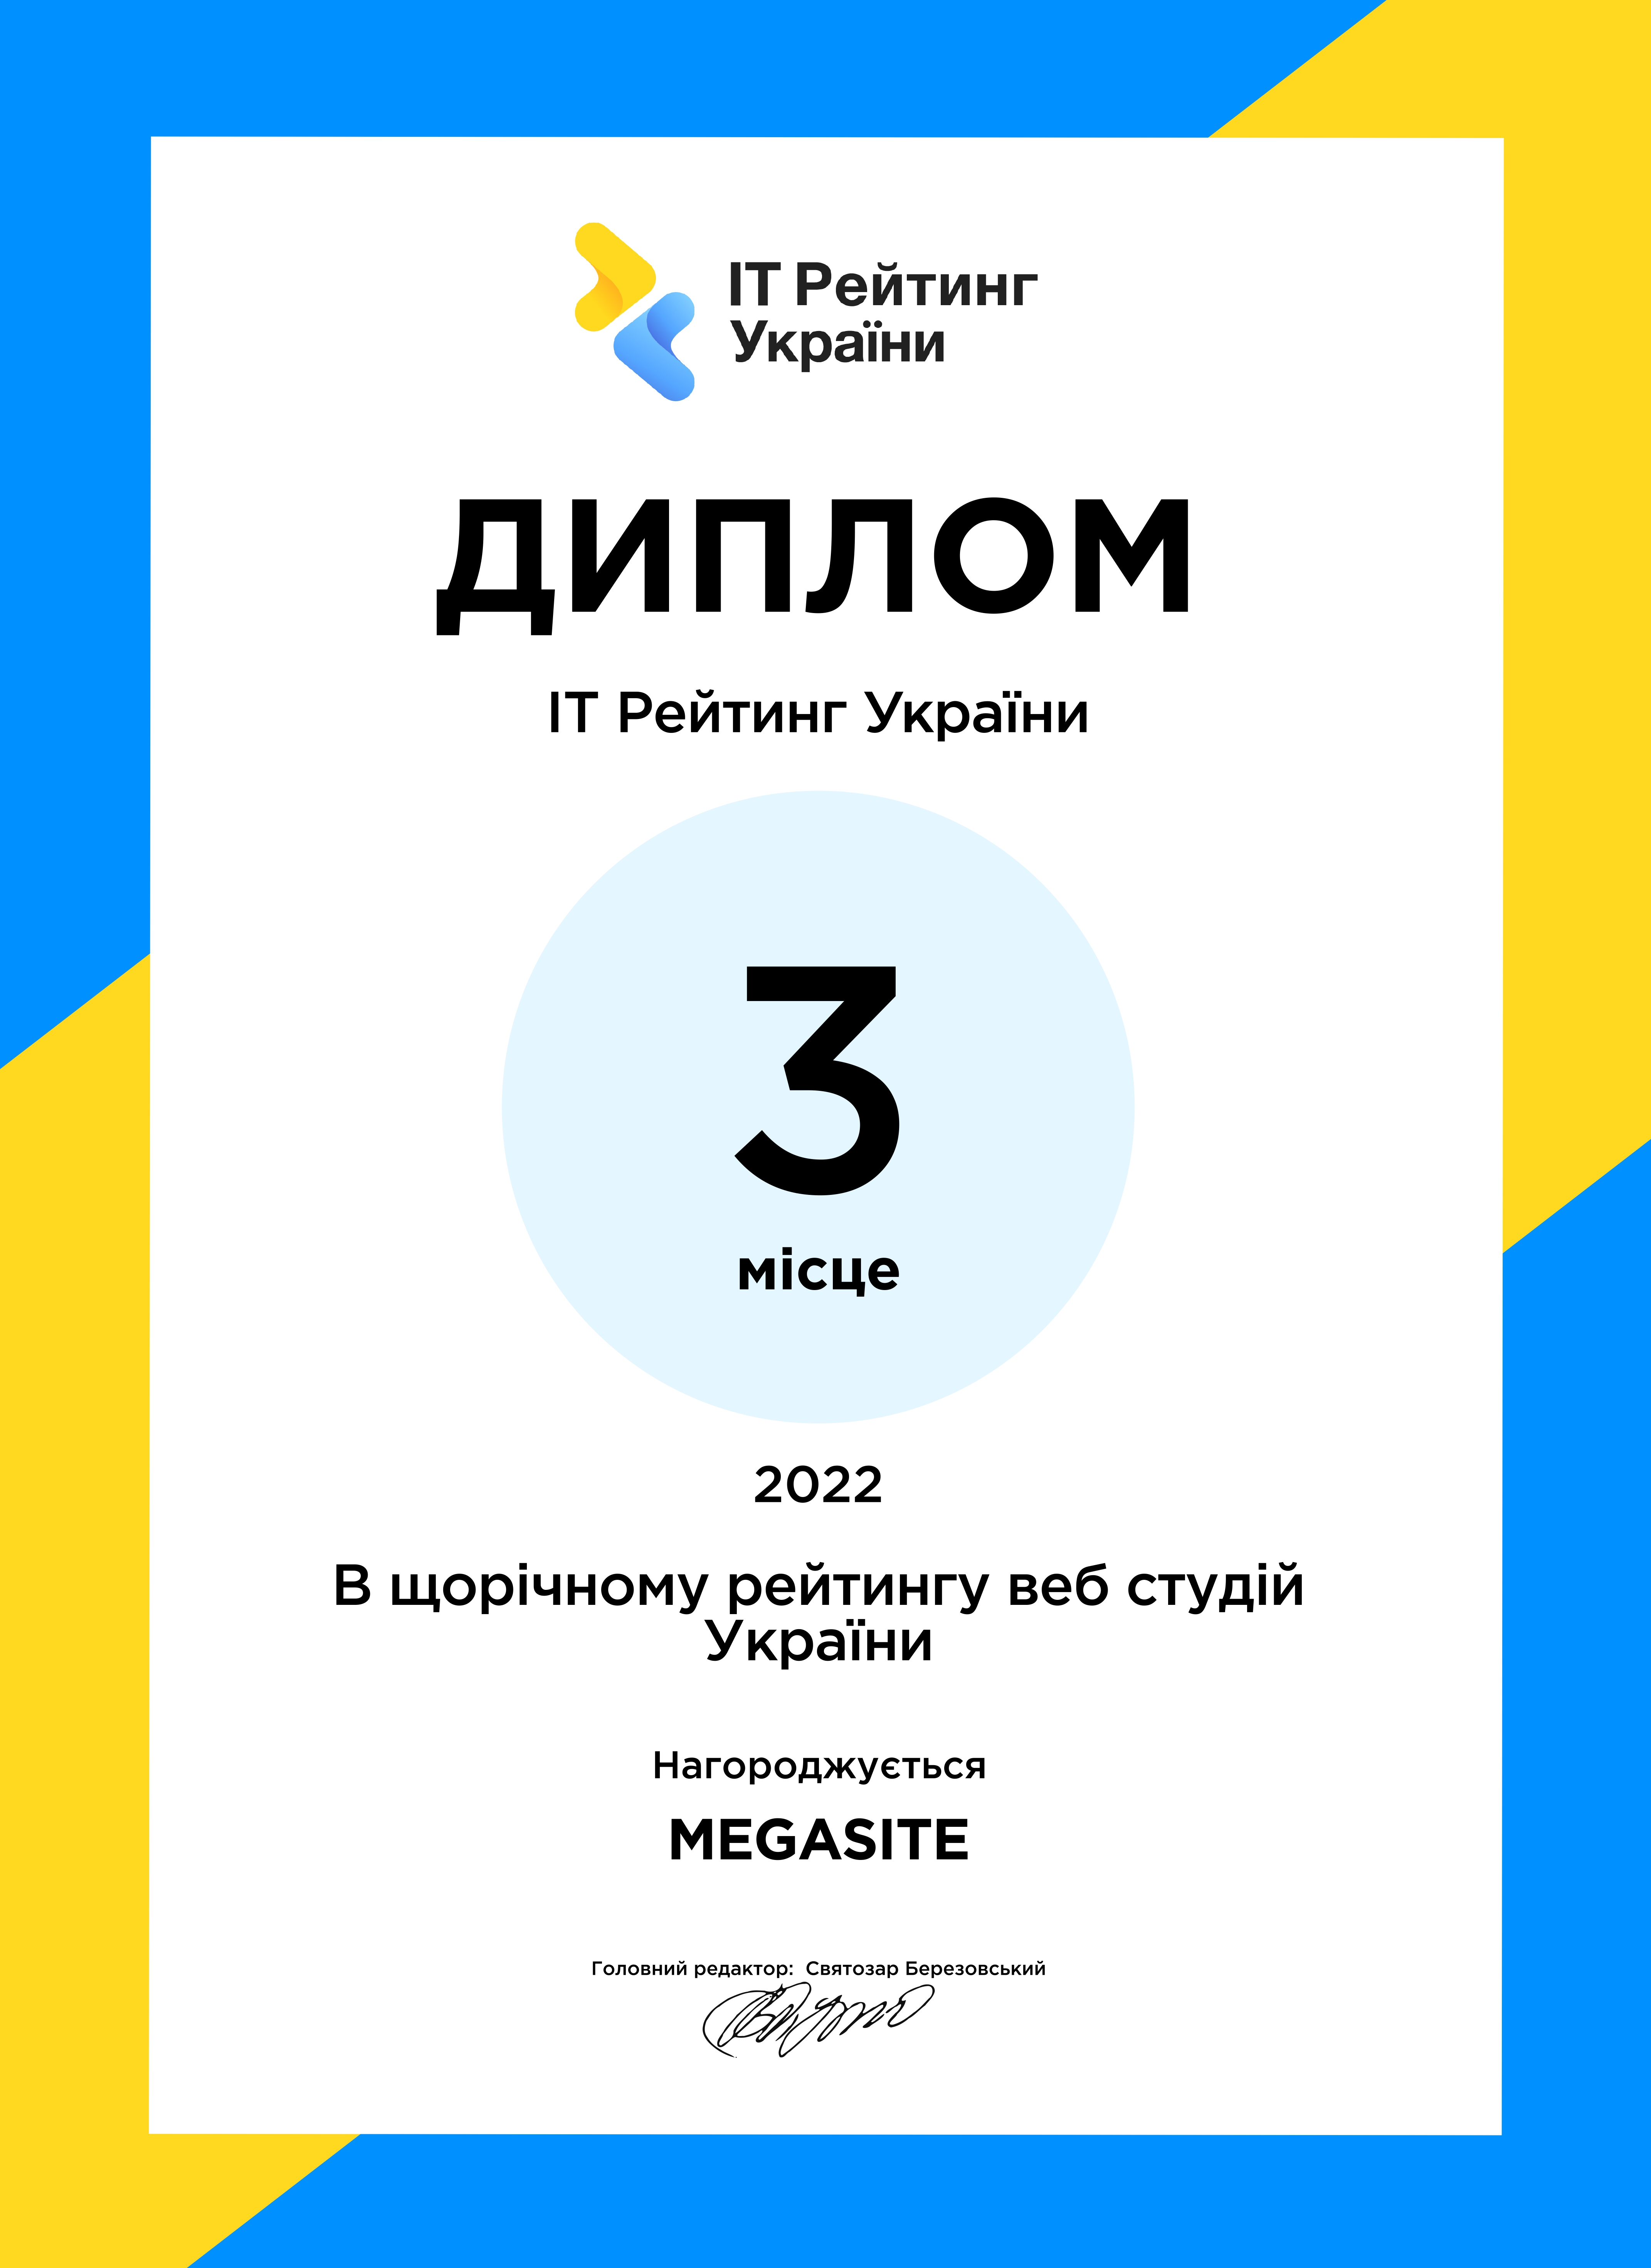 MEGASITE: 3 место в рейтинге веб-студий Украины за 2022 год